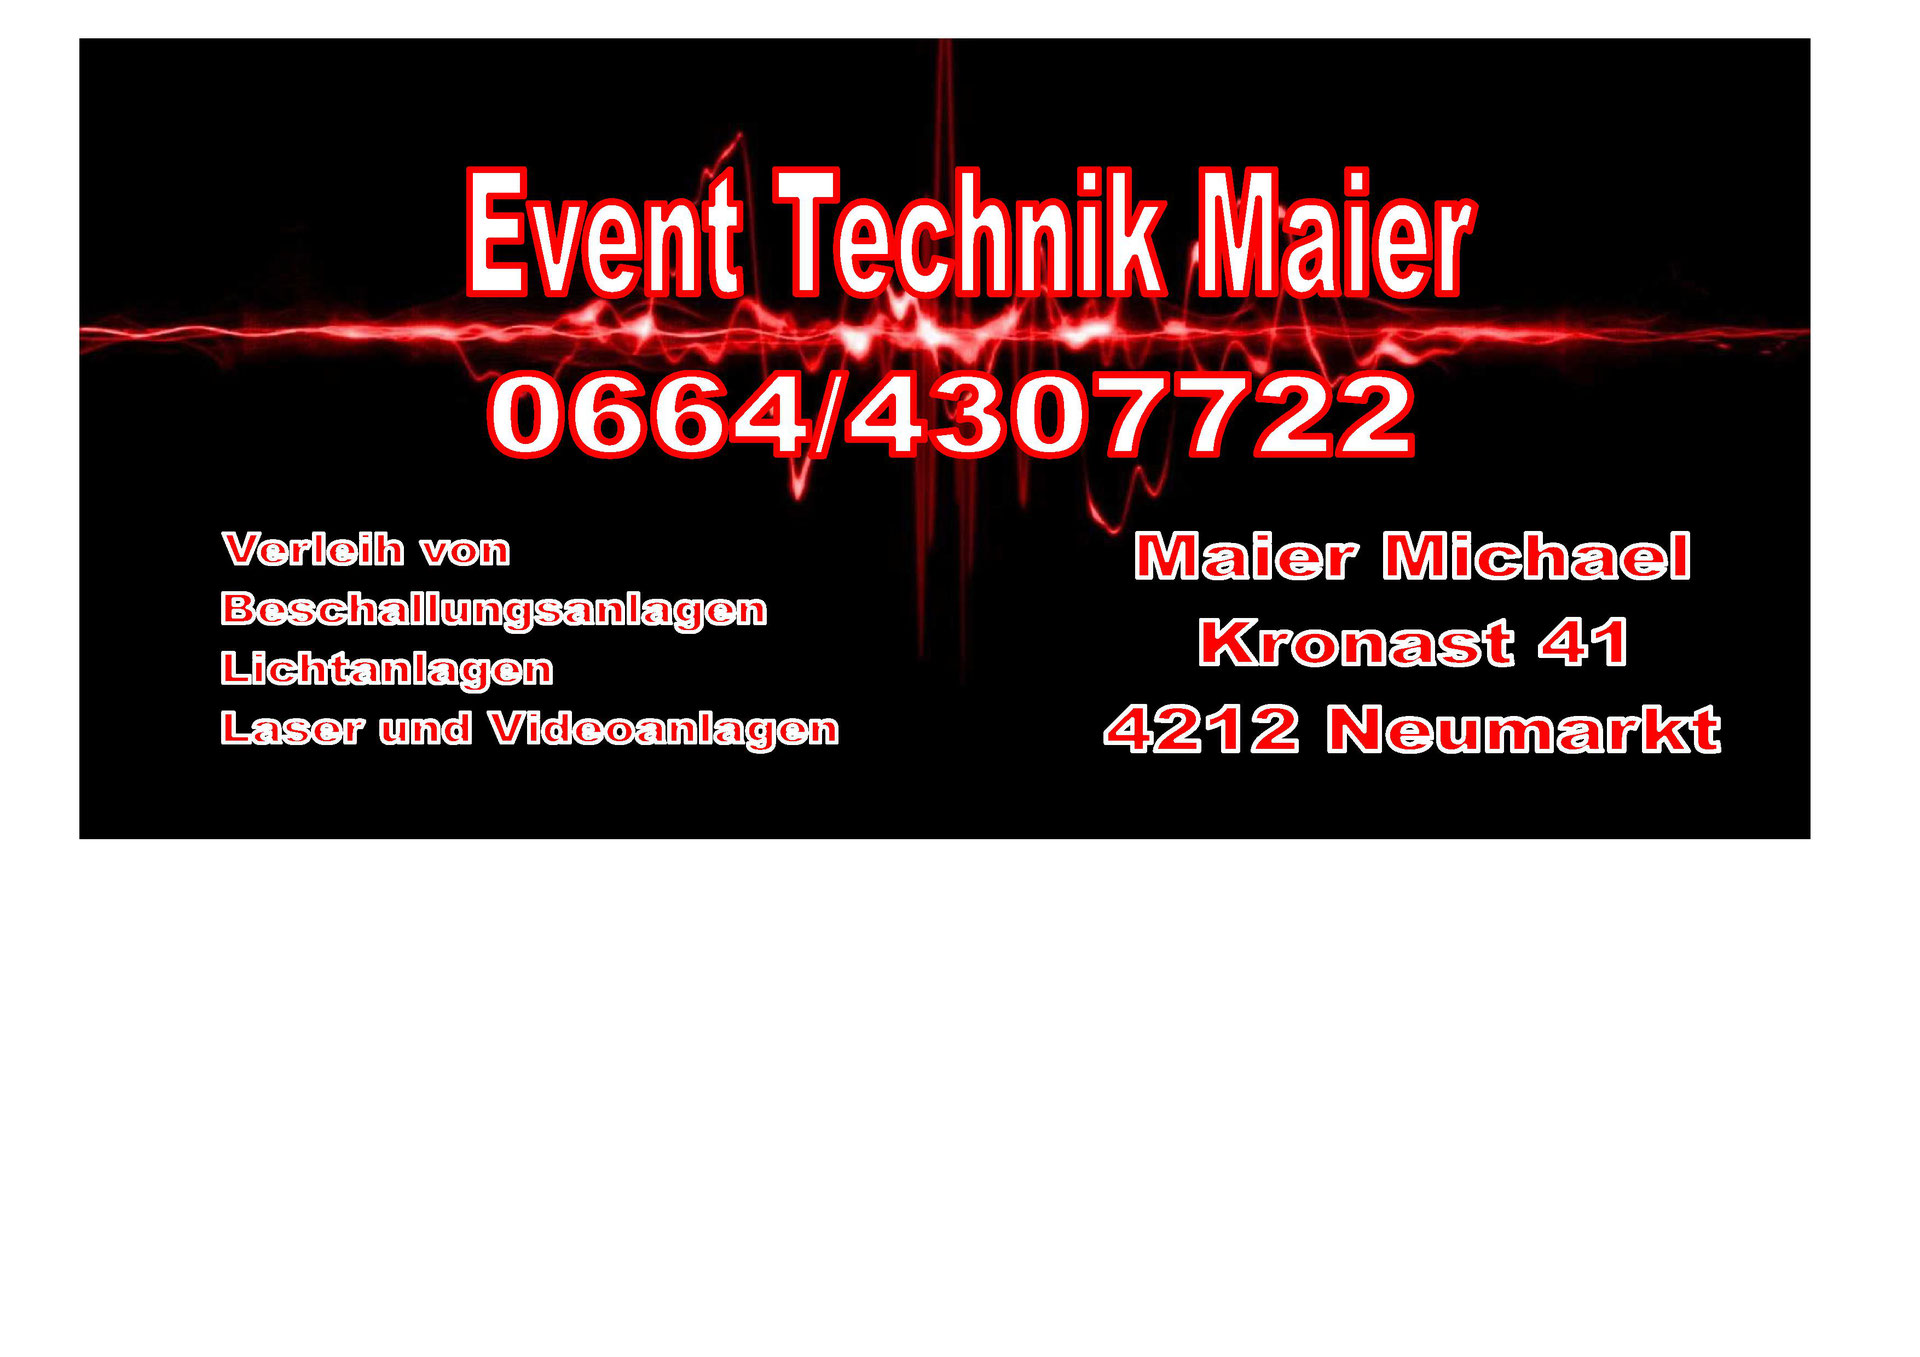 (c) Eventtechnik-maier.at